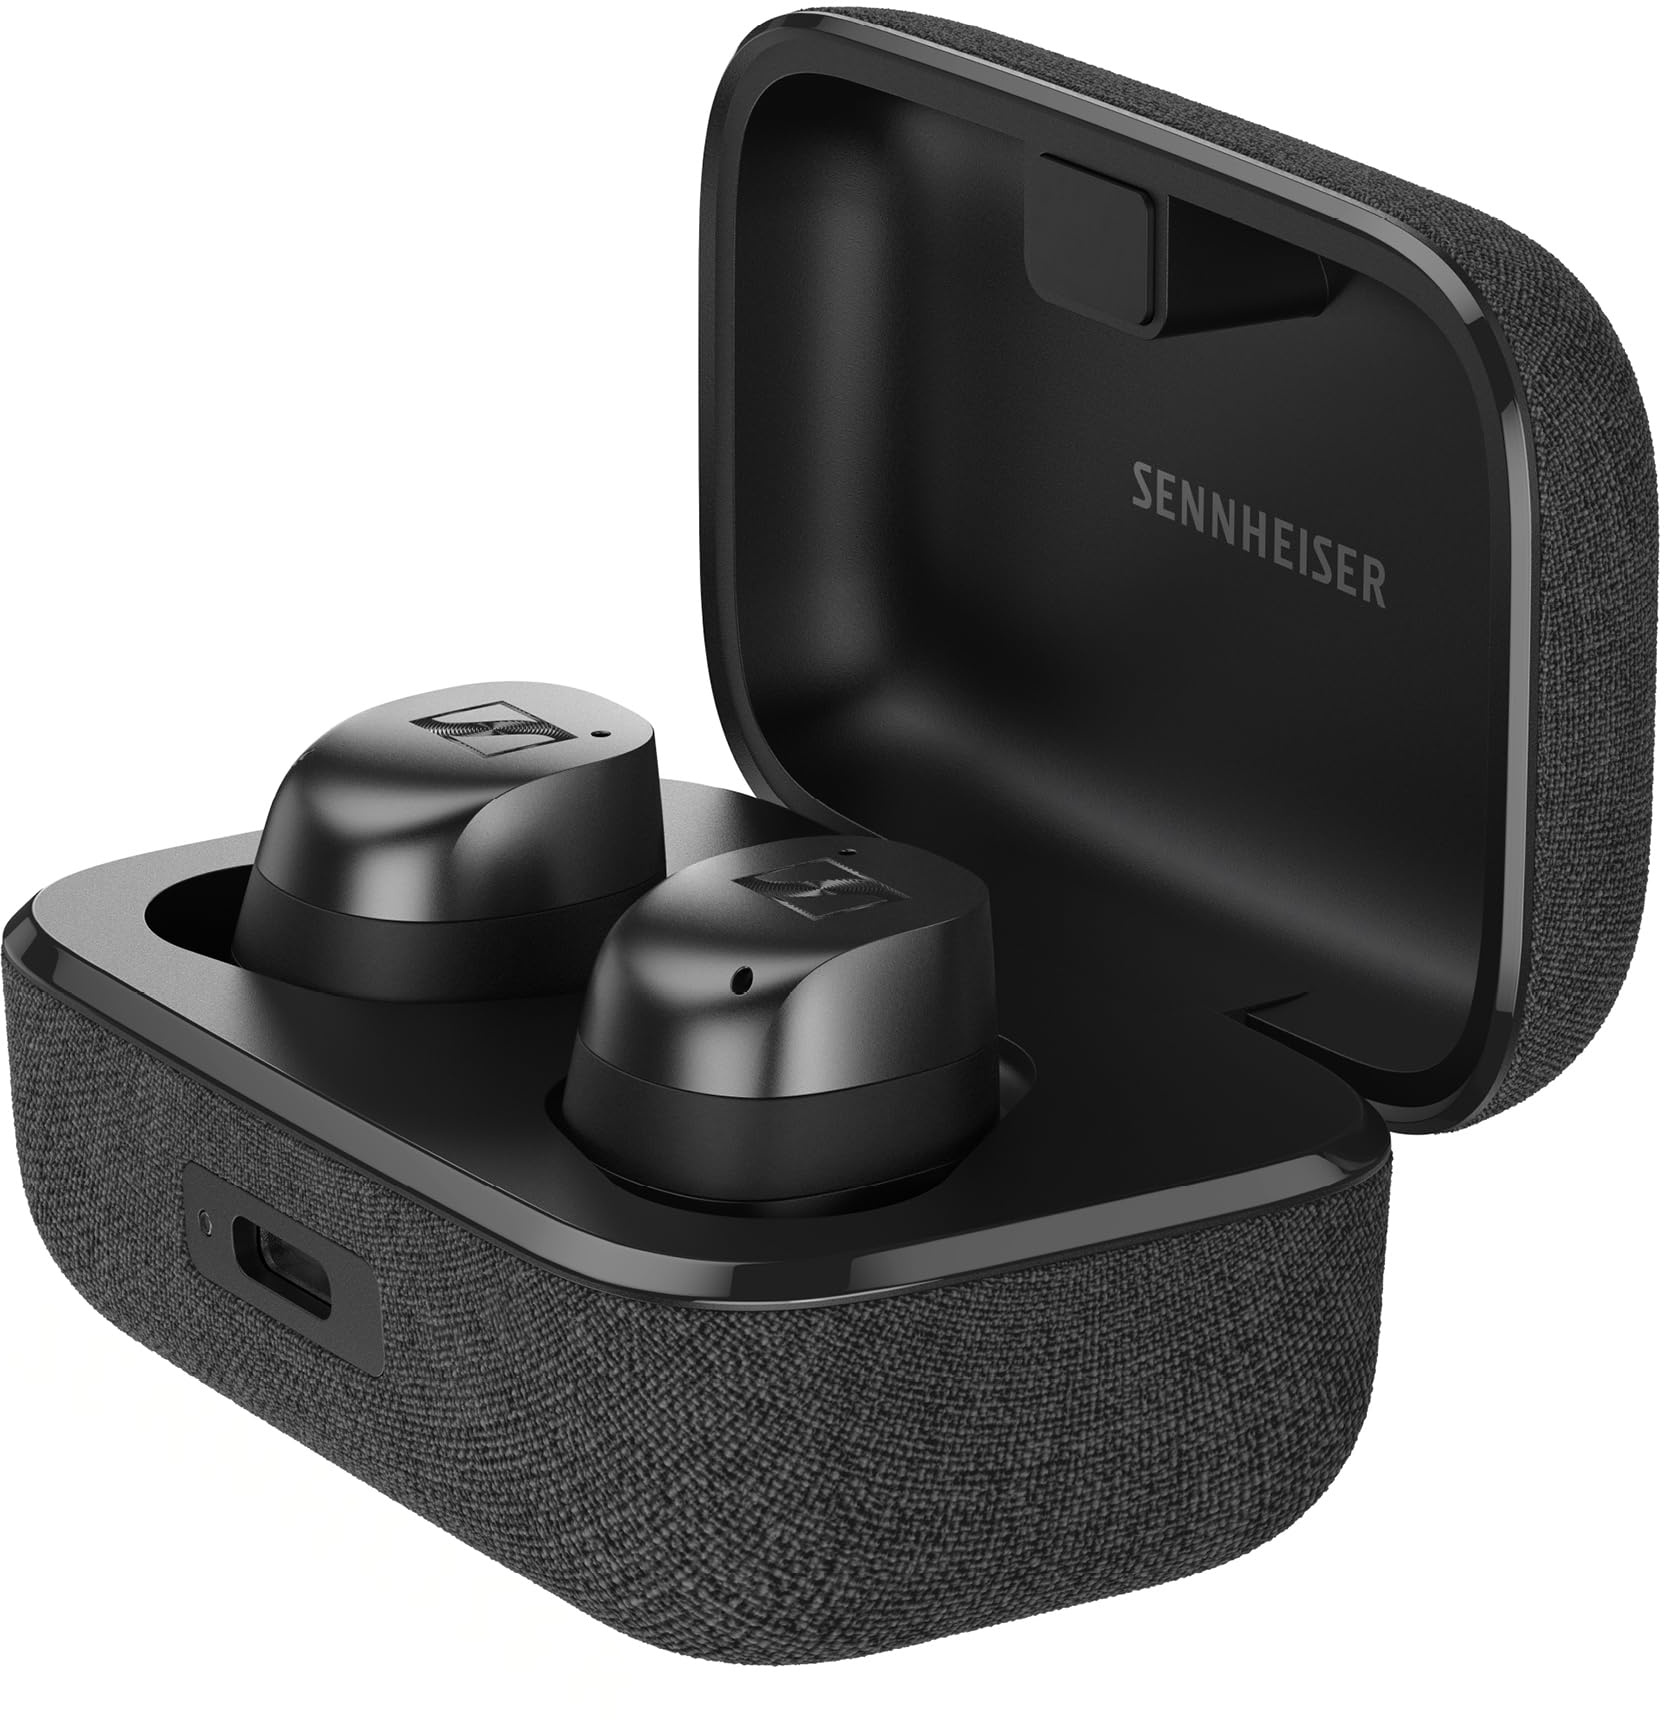 Sennheiser Momentum True Wireless 4 Smart Earbuds Bluetooth 5.4, kristallklarem Klang, ergonomischem Design, 30 Stunden Akkulaufzeit, Adaptive ANC, LE Audio und Auracast – Schwarz Graphit